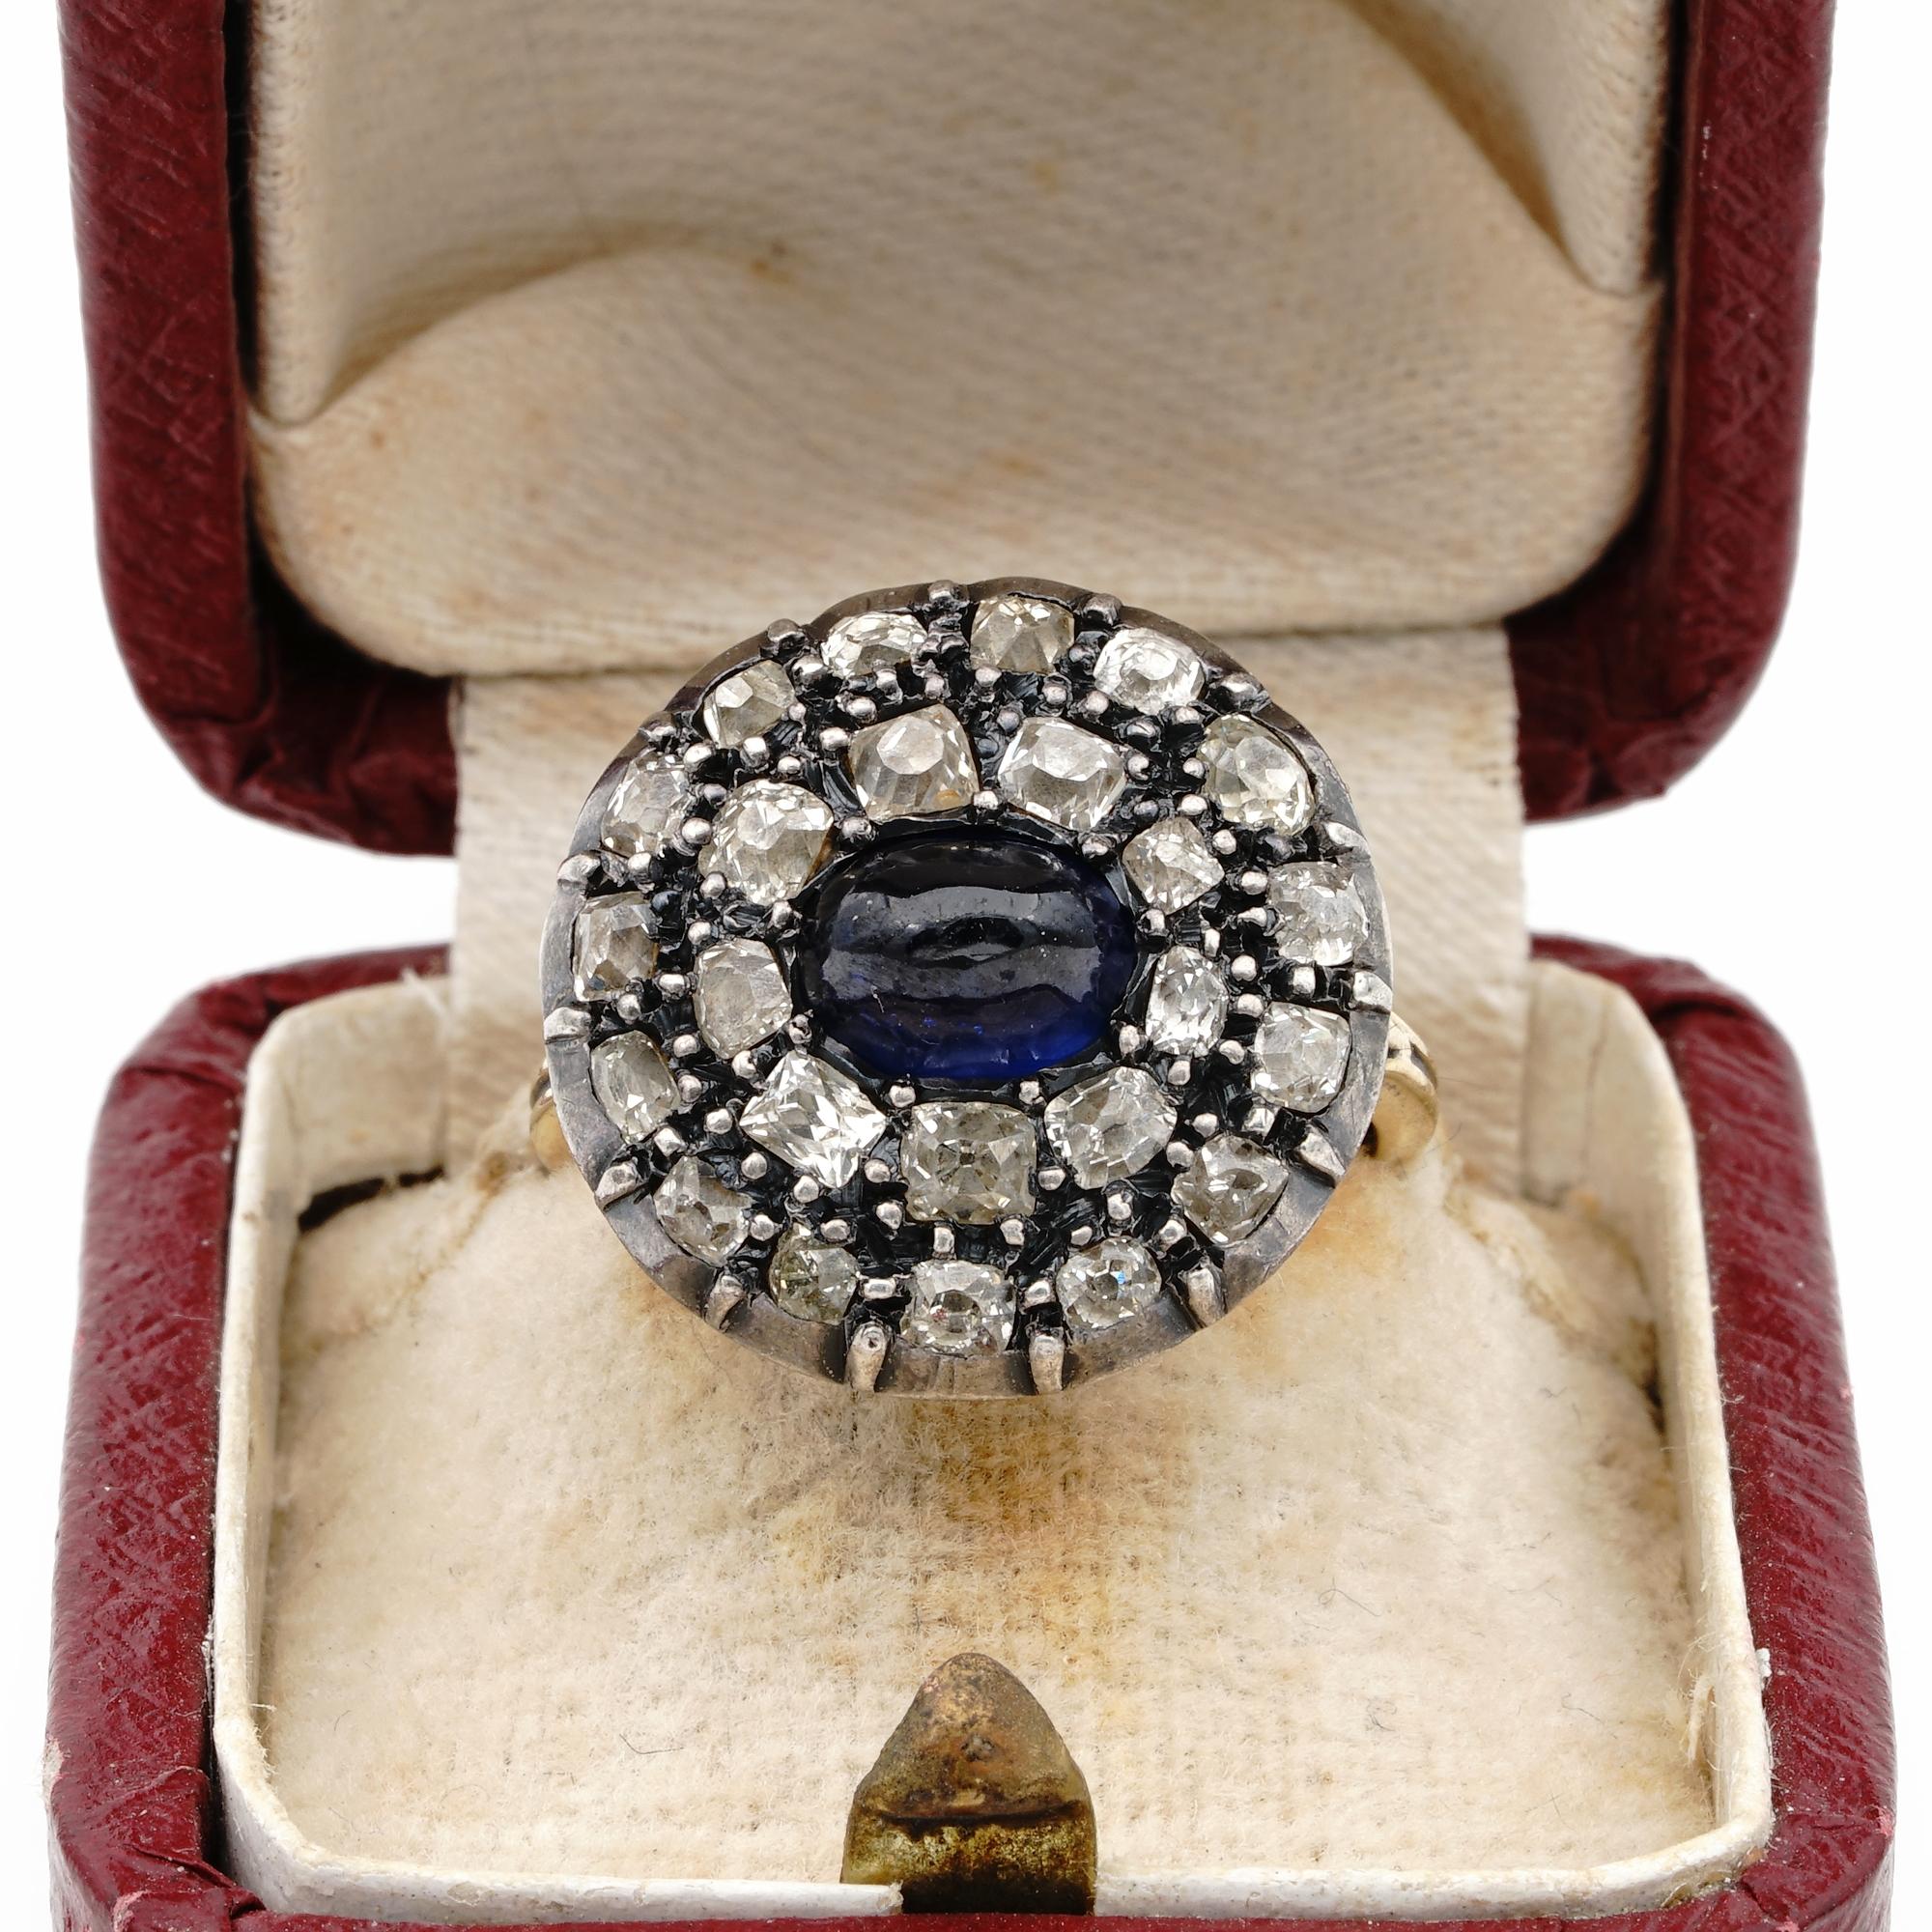 Dieser schöne georgianische Ring ist um 1790 entstanden.
Hergestellt aus 18 Kt Gold mit silbernen Tränken
Runder Kopf überwältigt von antiken Diamanten im flämischen Schliff mit einem geschätzten Gesamtgewicht von 2,40 ct, die einen natürlichen